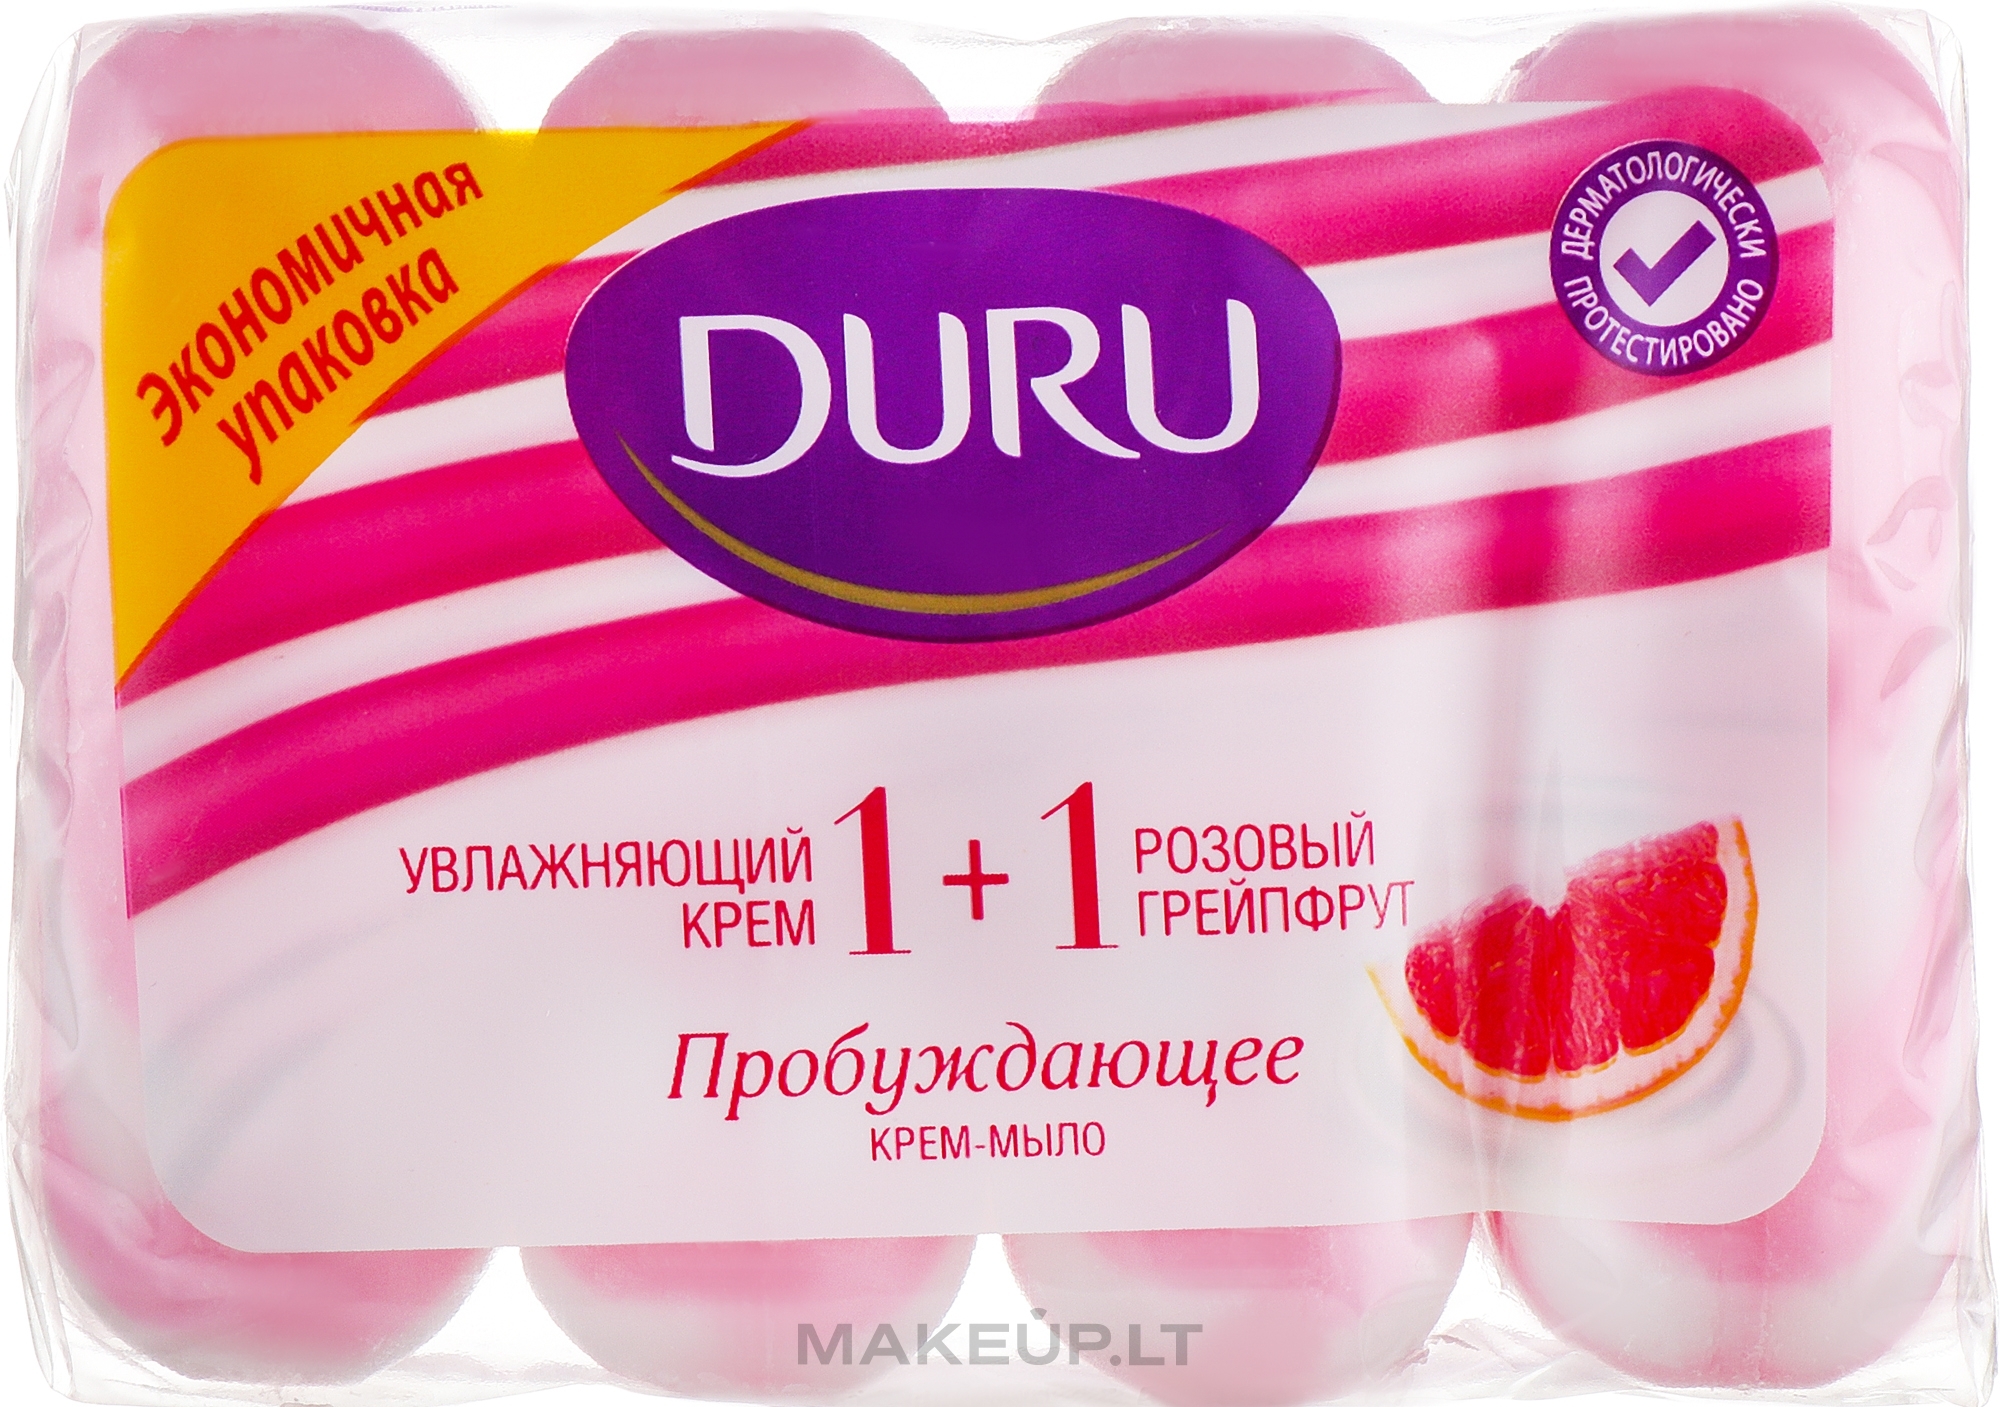 Мыло "Дуру" увлажнение ,розовый грейпфрукт 4*80 гр